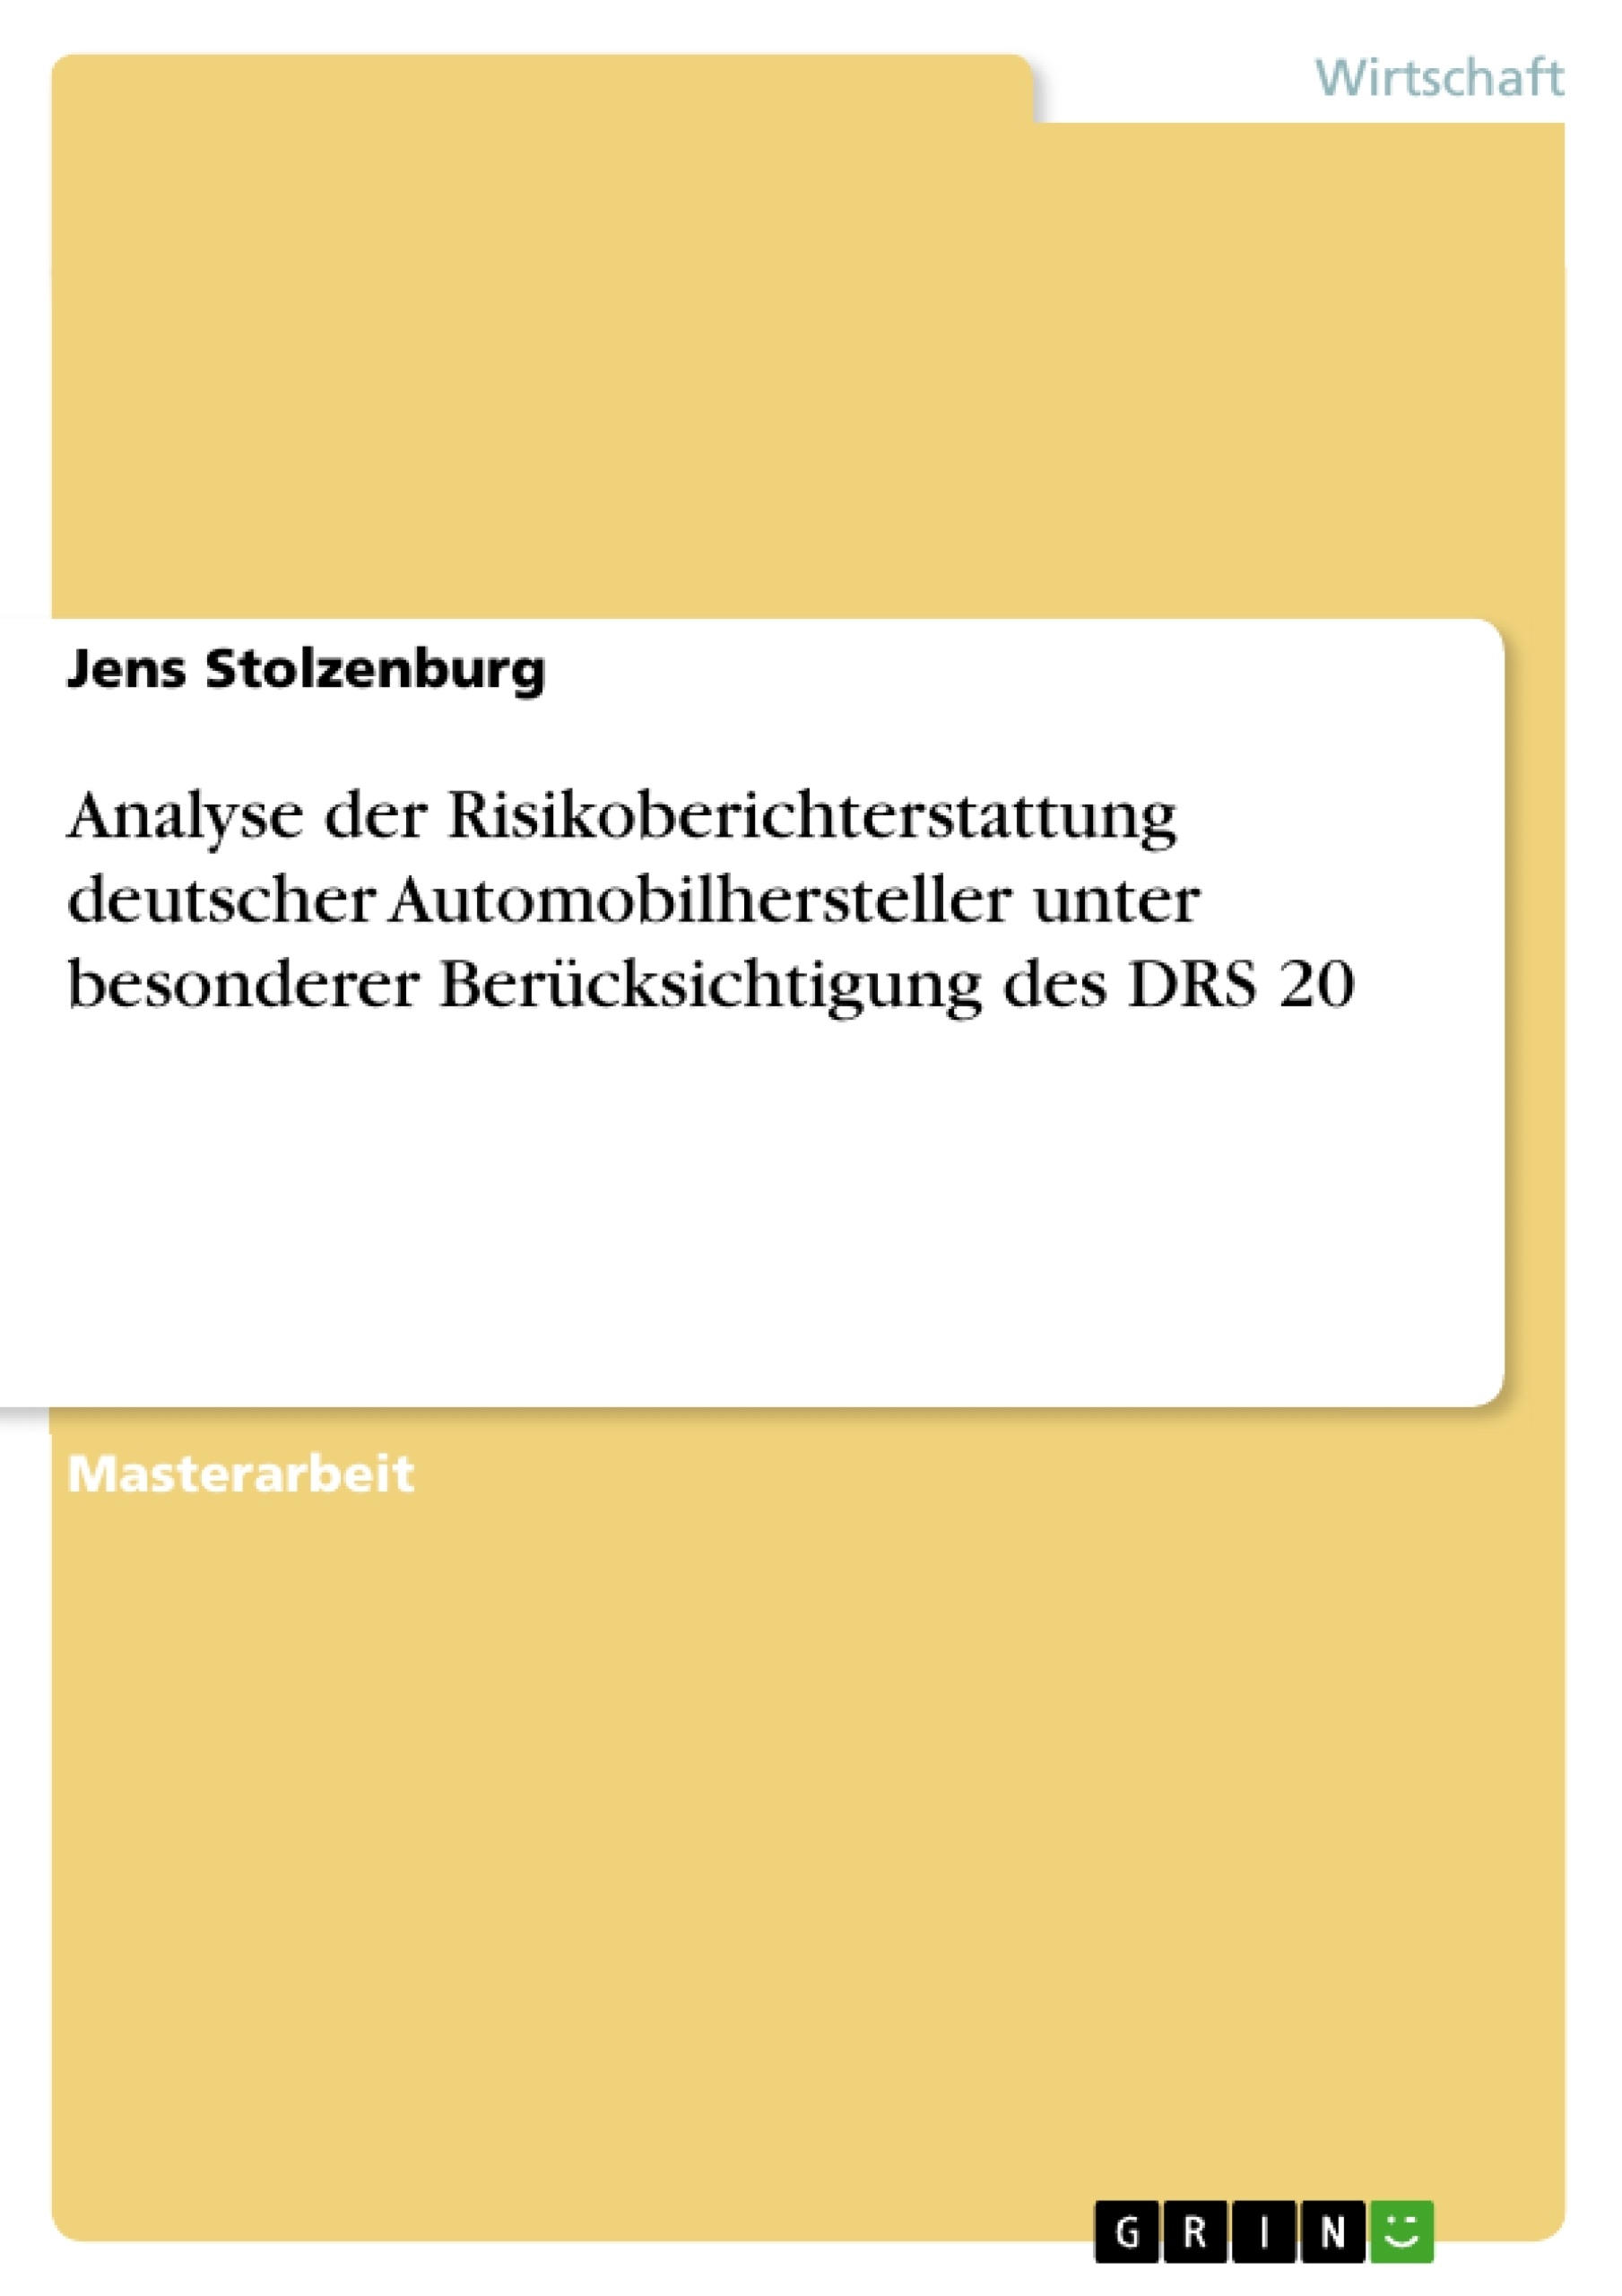 Title: Analyse der Risikoberichterstattung deutscher Automobilhersteller unter besonderer Berücksichtigung des DRS 20